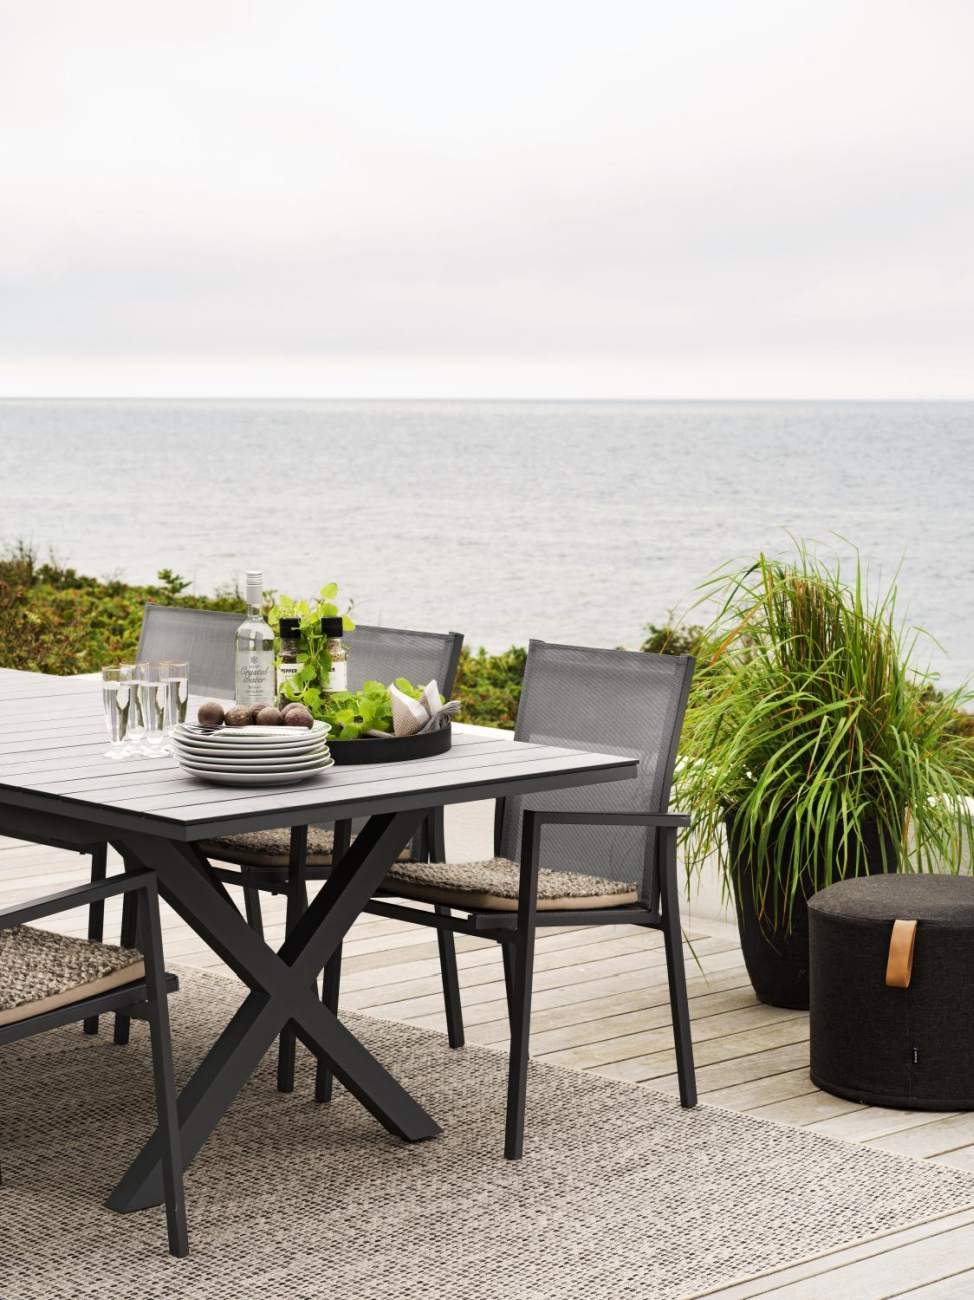 Der Gartenstuhl Avanti überzeugt mit seinem modernen Design. Gefertigt wurde er aus Textilene, welches einen schwarzen Farbton besitzt. Das Gestell ist aus Metall und hat eine schwarze Farbe. Die Sitzhöhe des Stuhls beträgt 44 cm.